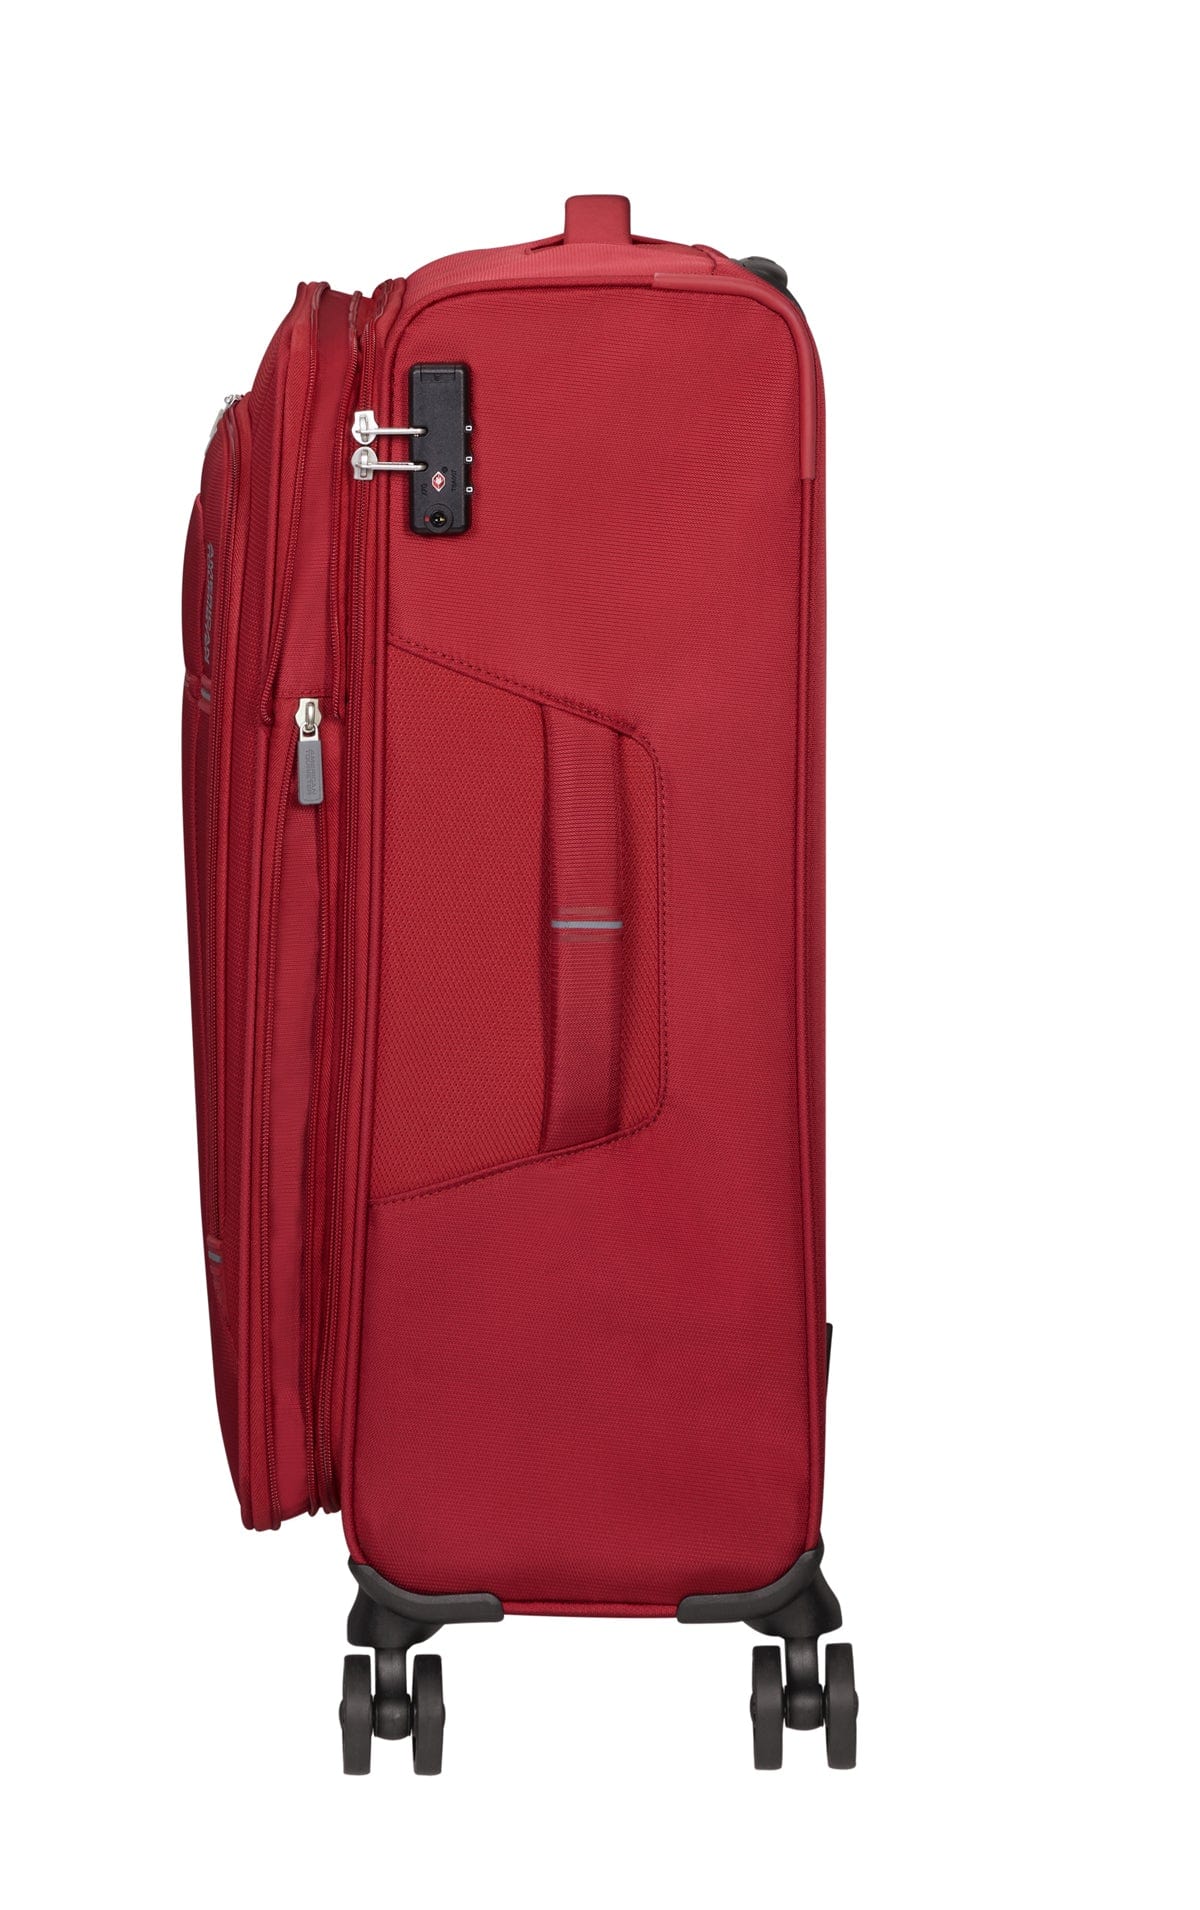 Rode koffer 4 wielen soft tussenmaat 67 cm